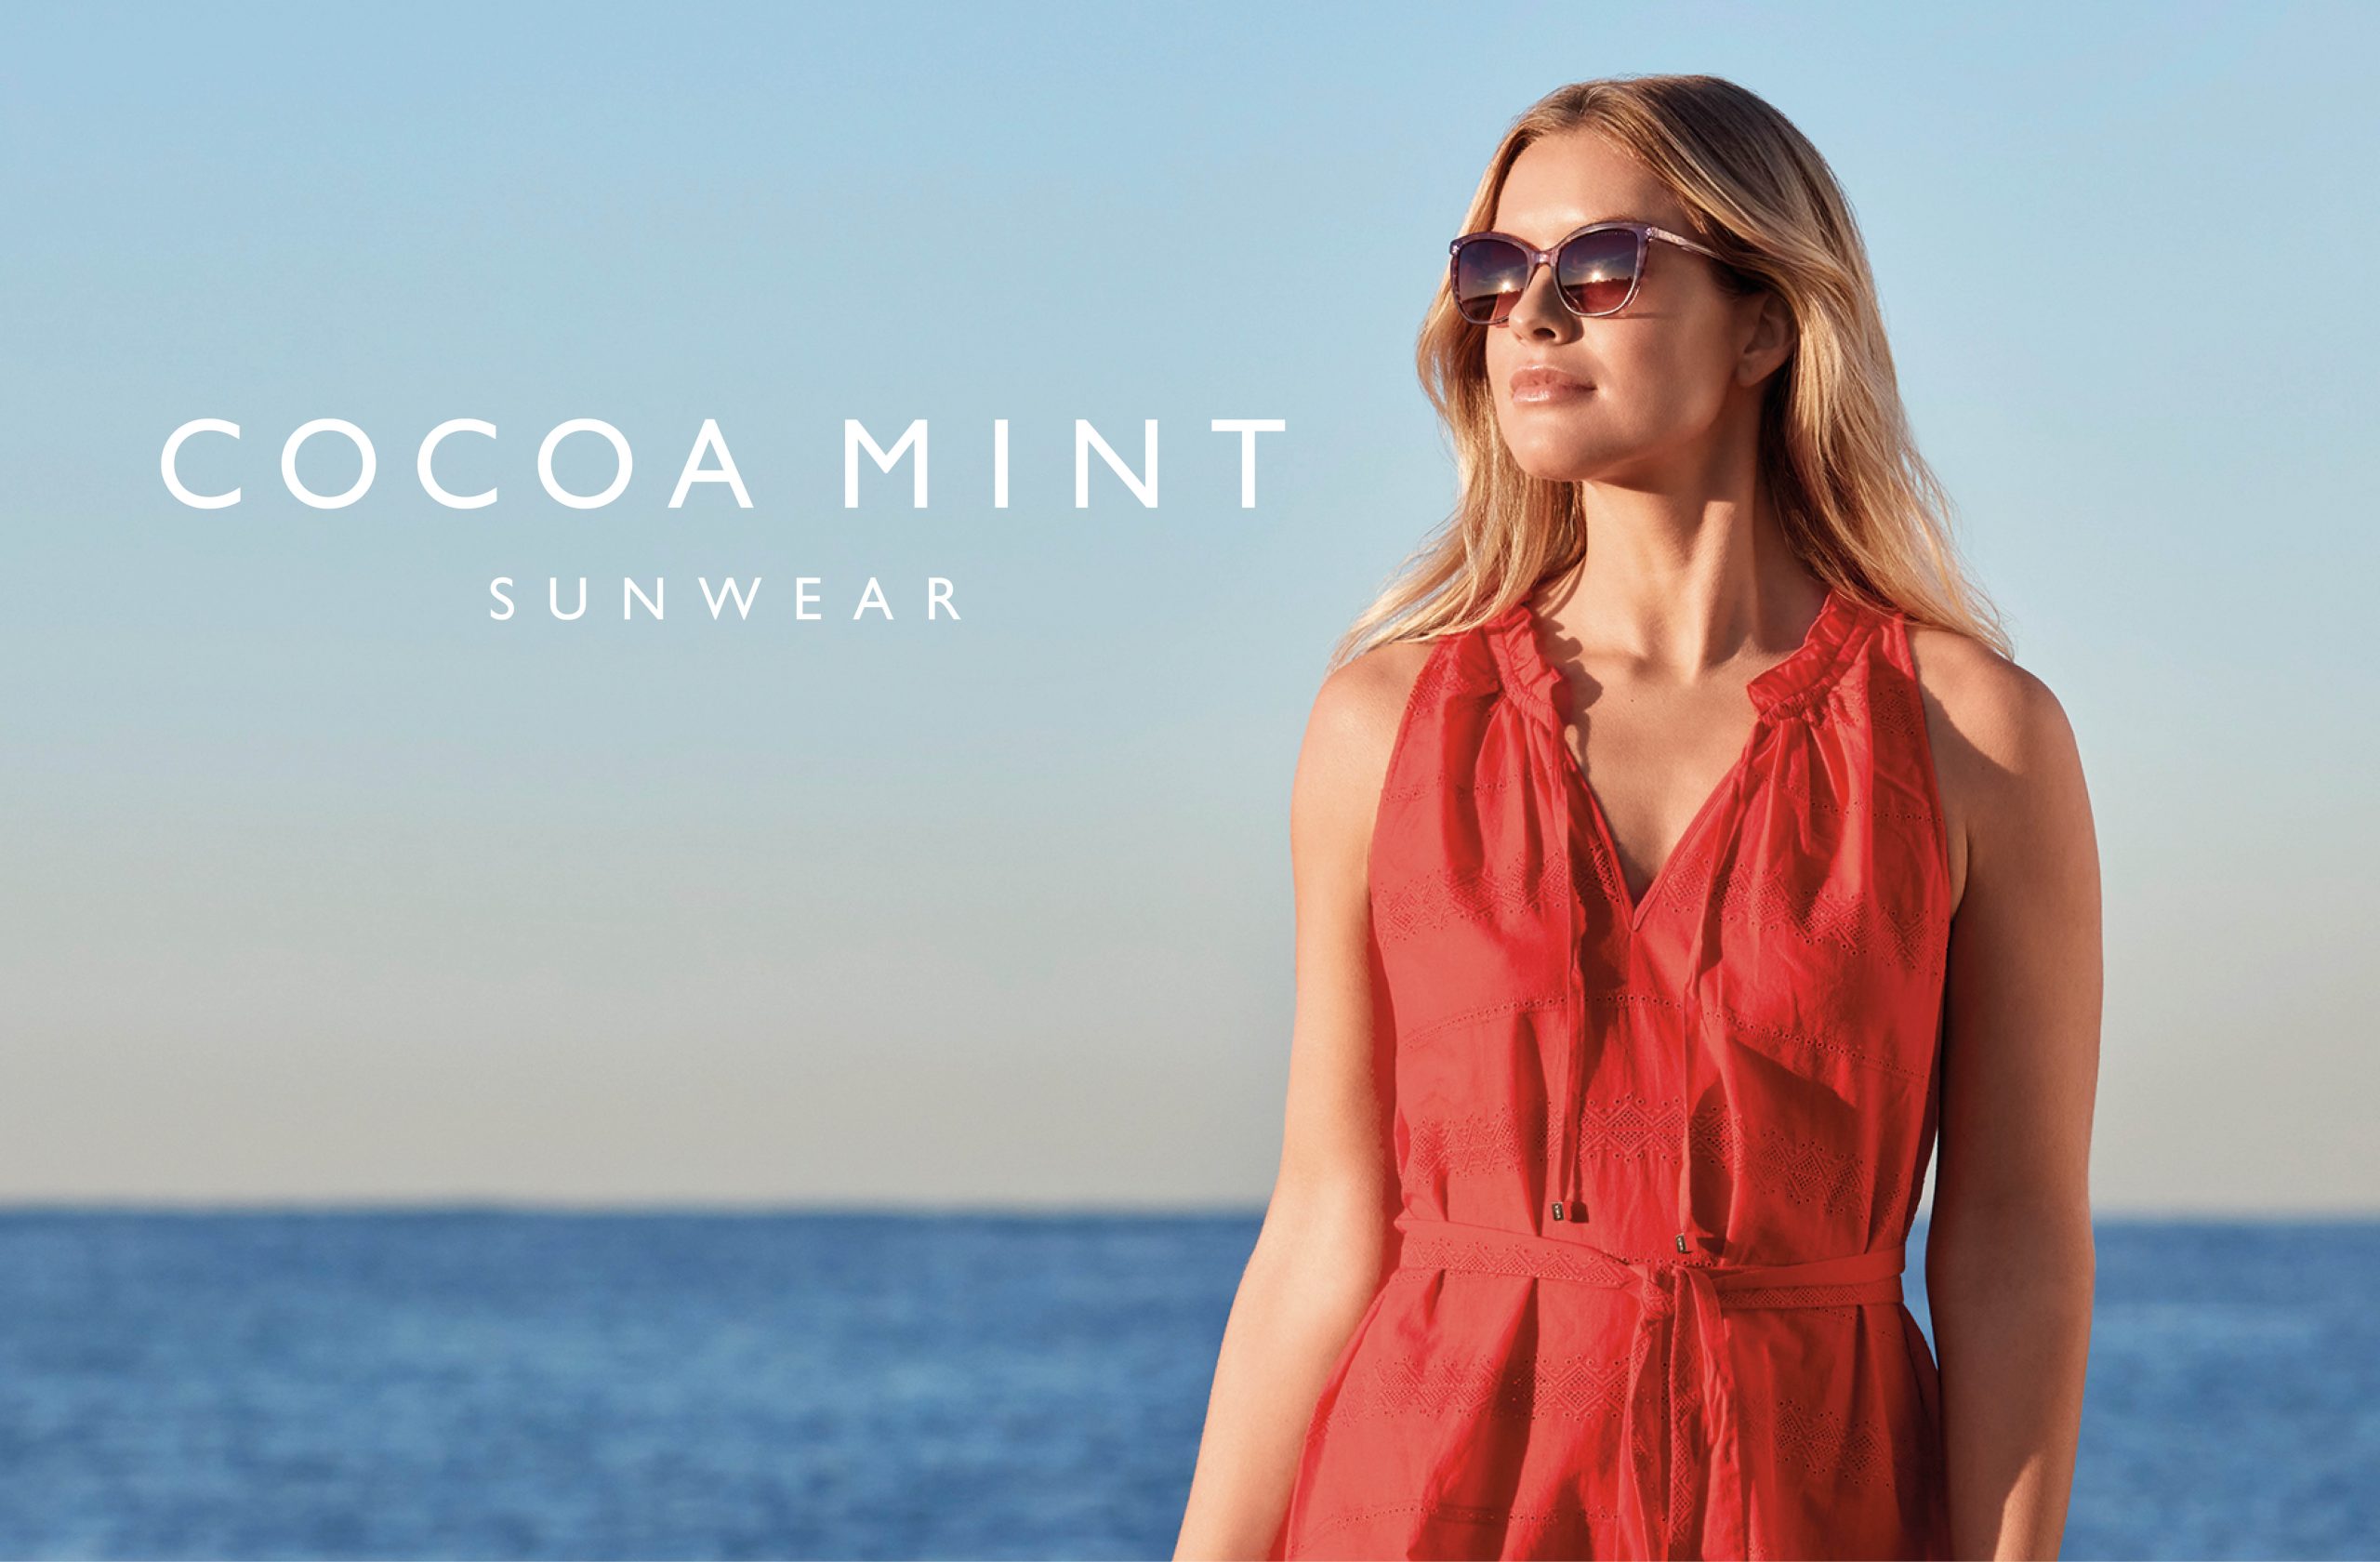 Model wears Cocoa Mint sunwear